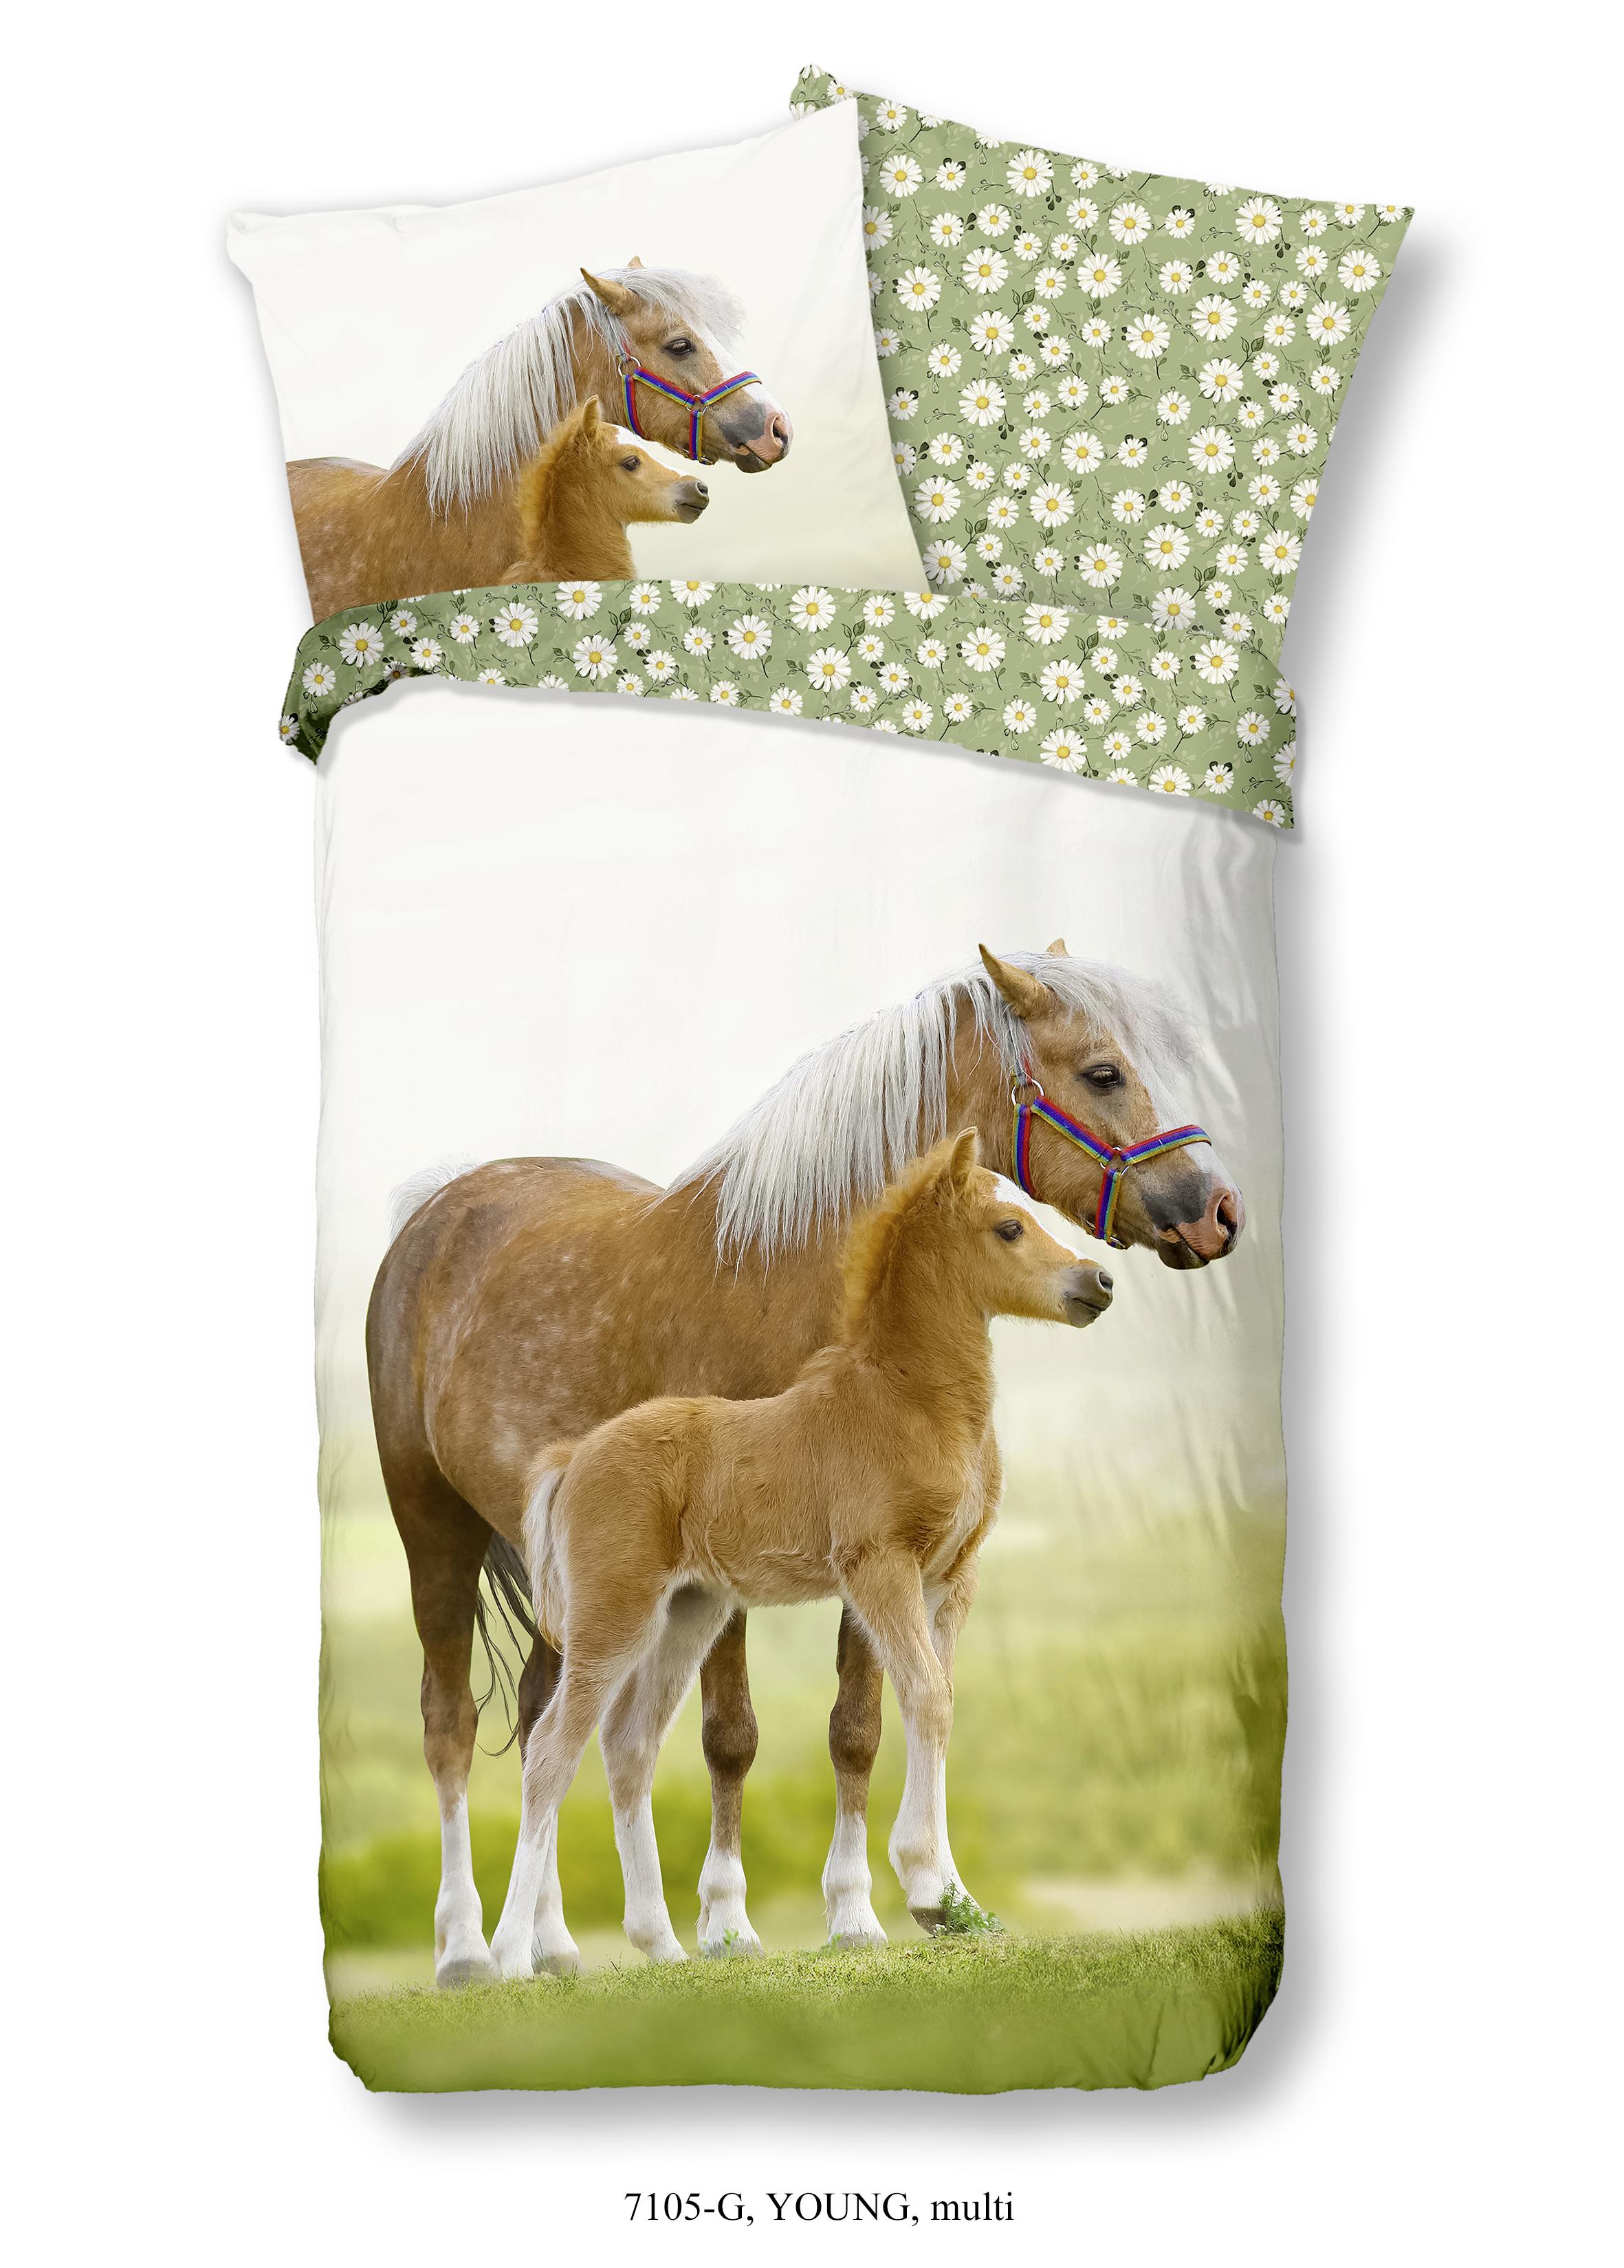 Wende-Kinderbettwäsche Young Horse ca. 135x200cm - Weiß/Grün, Textil (135/200cm) - MID.YOU